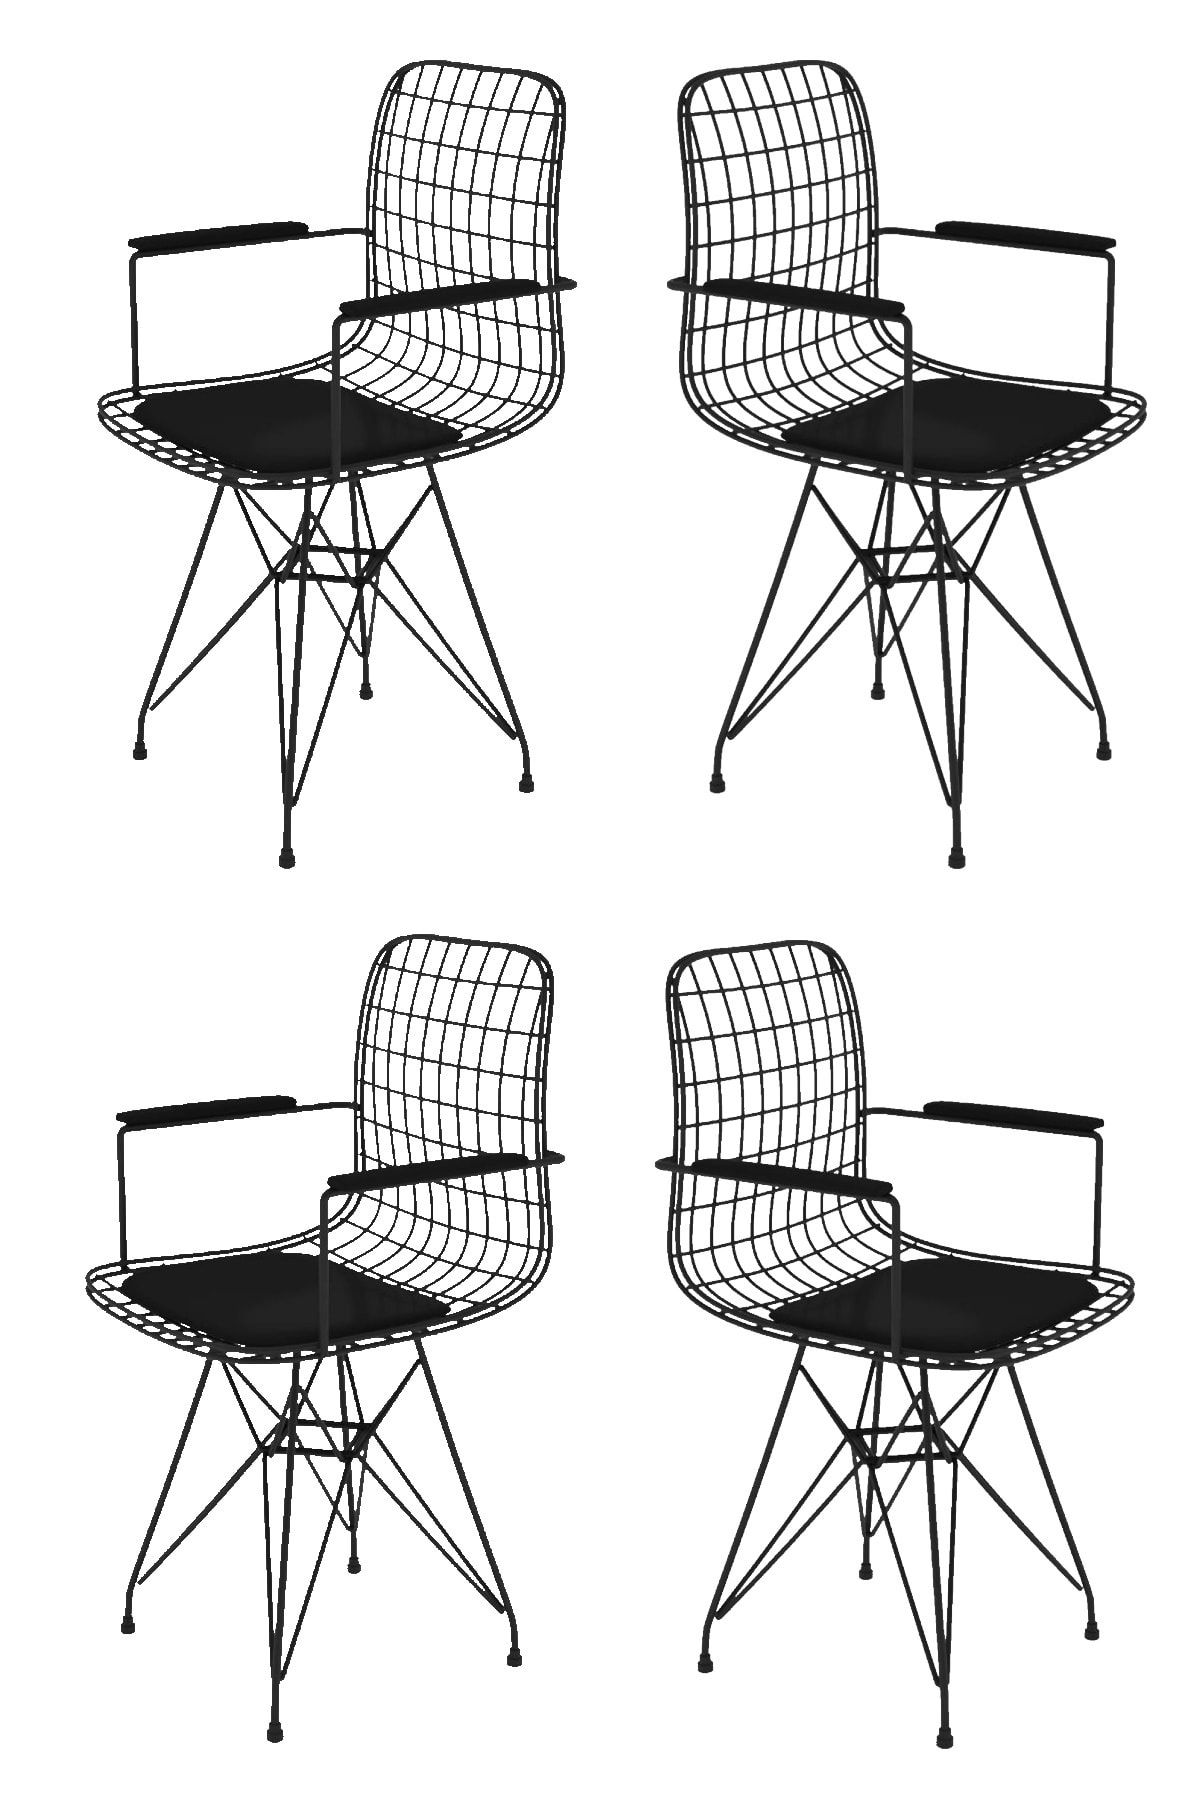 Kenzlife Knsz kafes tel sandalyesi 4 lü mazlum syhsyh kolçaklı ofis cafe bahçe mutfak